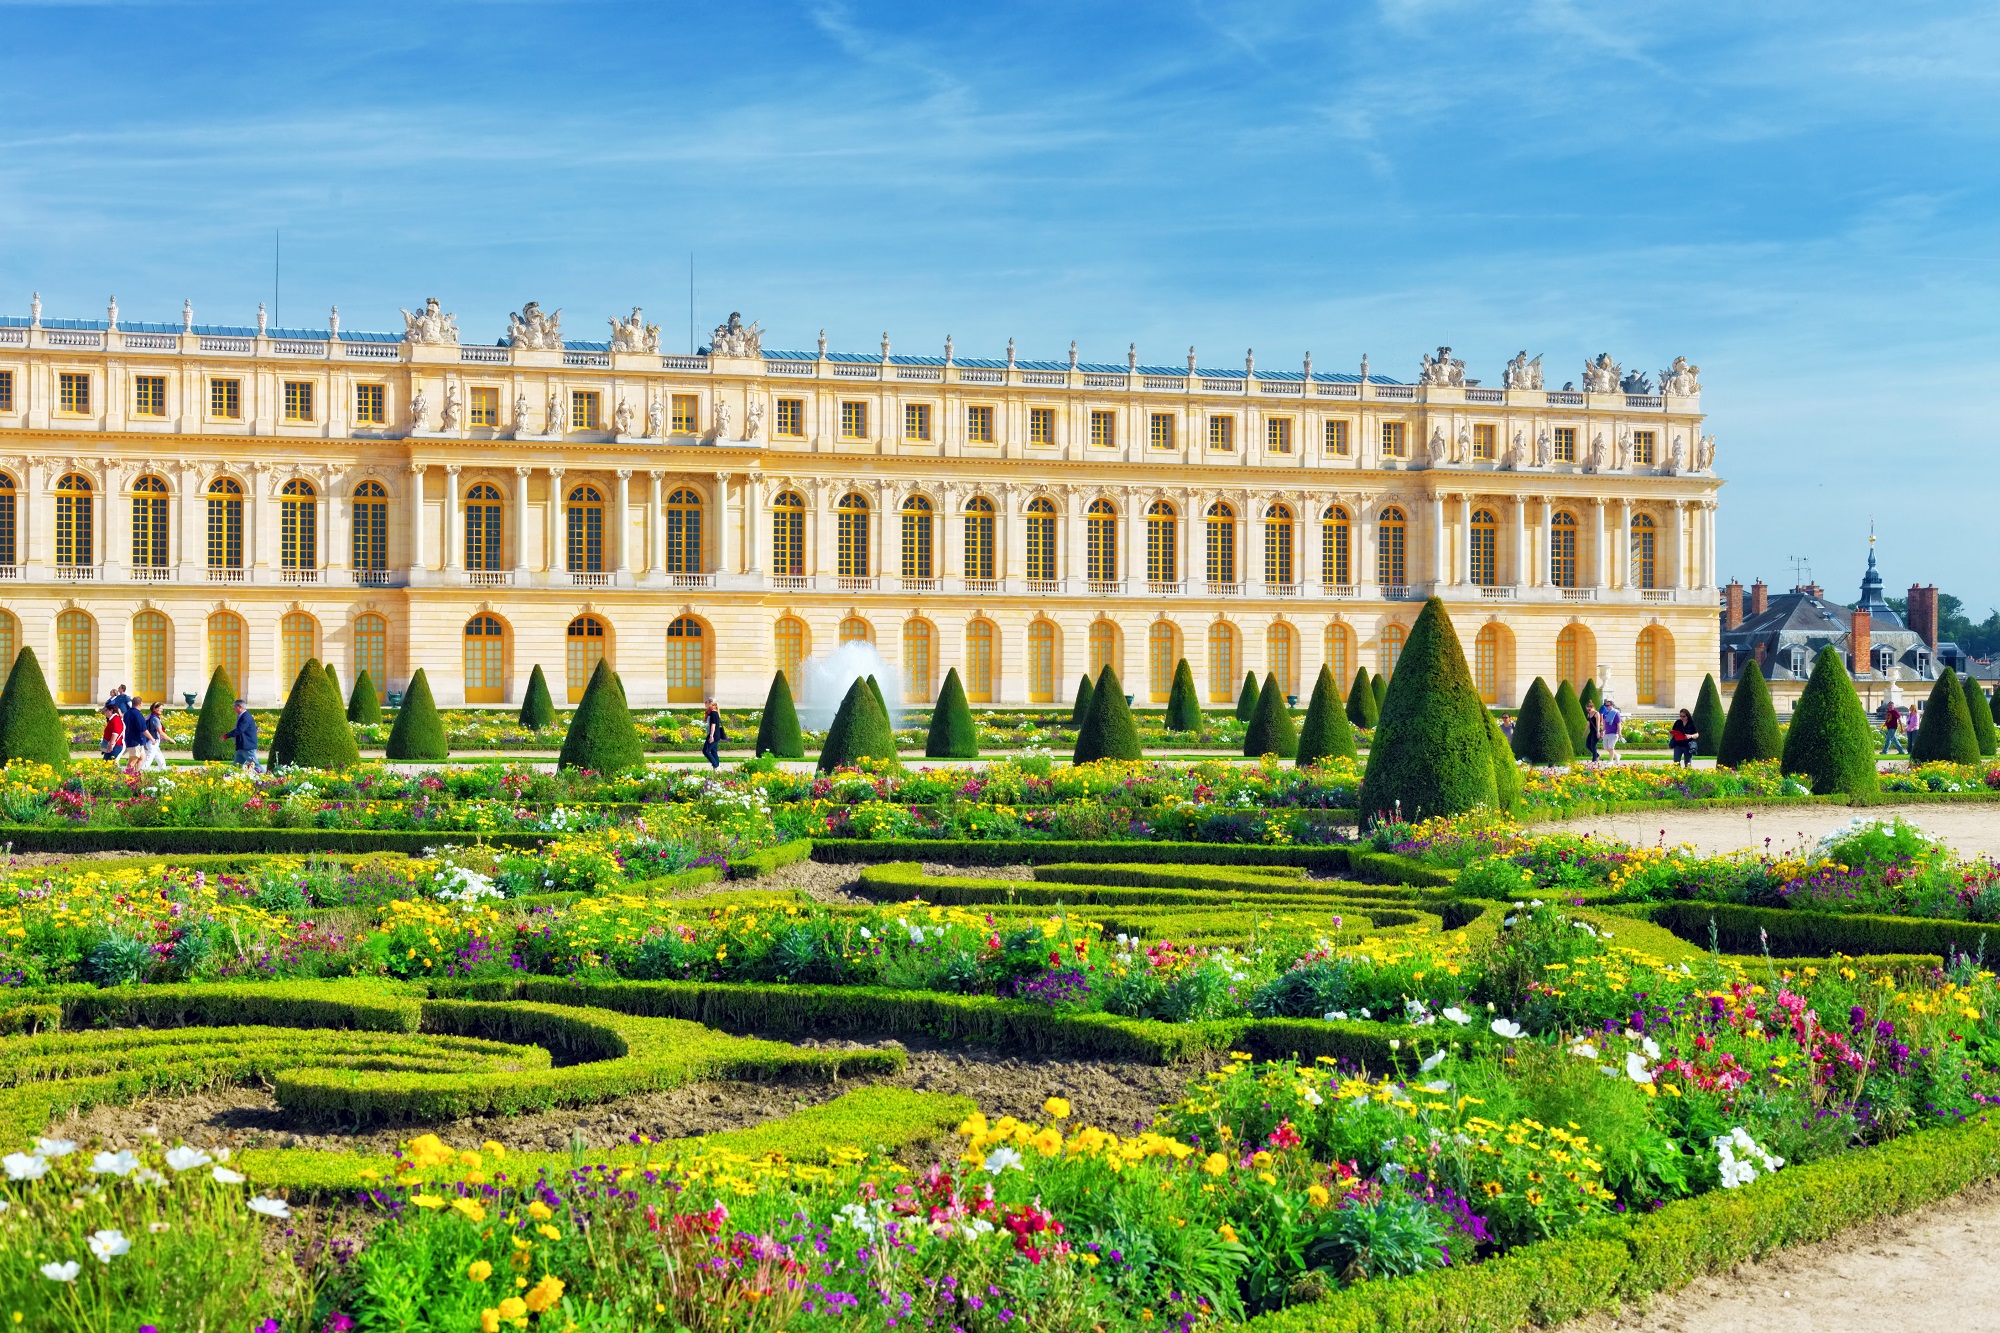 Versailles near Paris in France